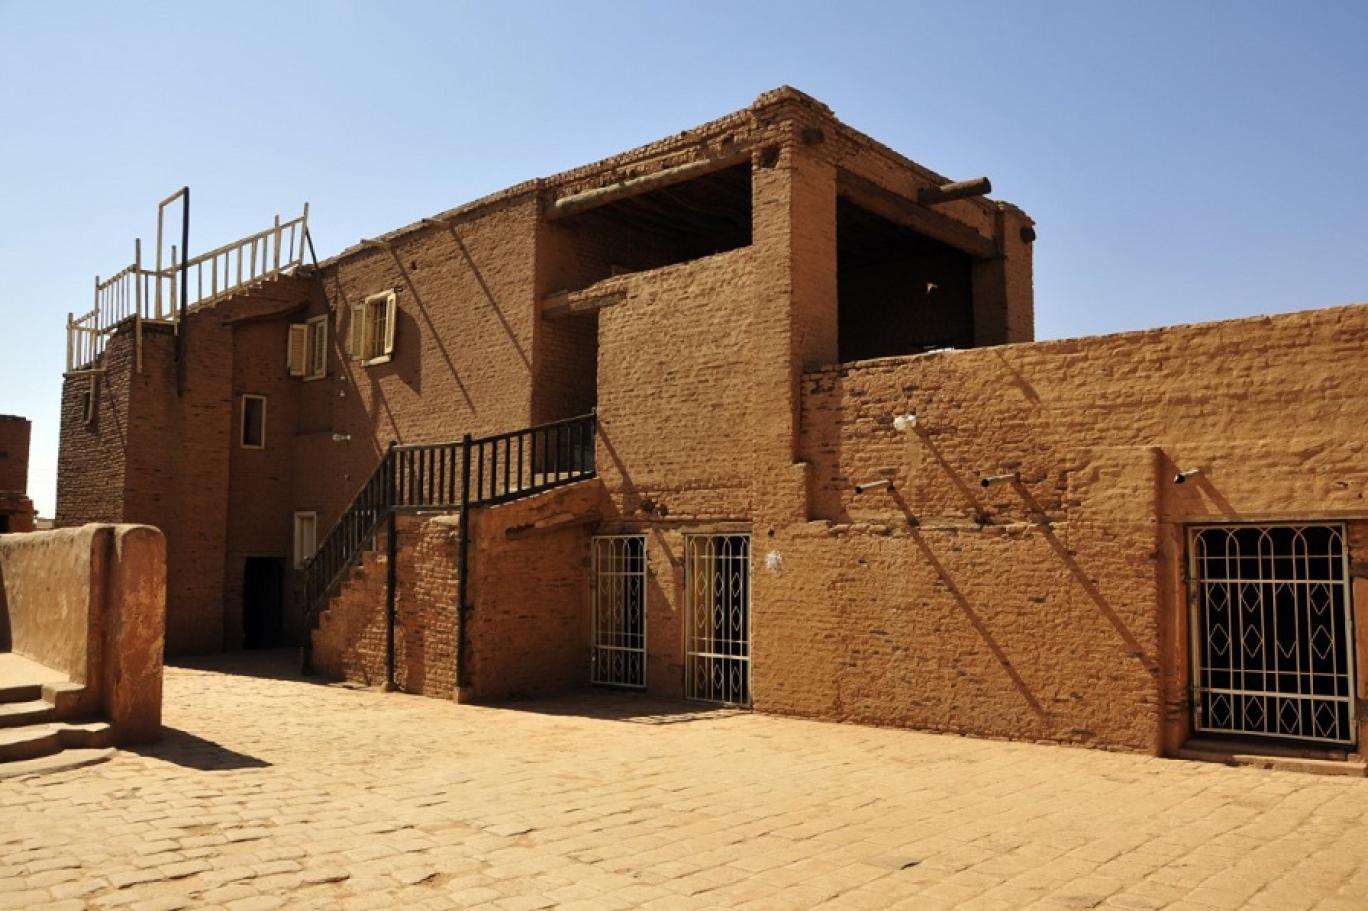 بيت الخليفة" متحف يؤرخ للثورة المهدية في السودان فما قصته؟ | اندبندنت عربية